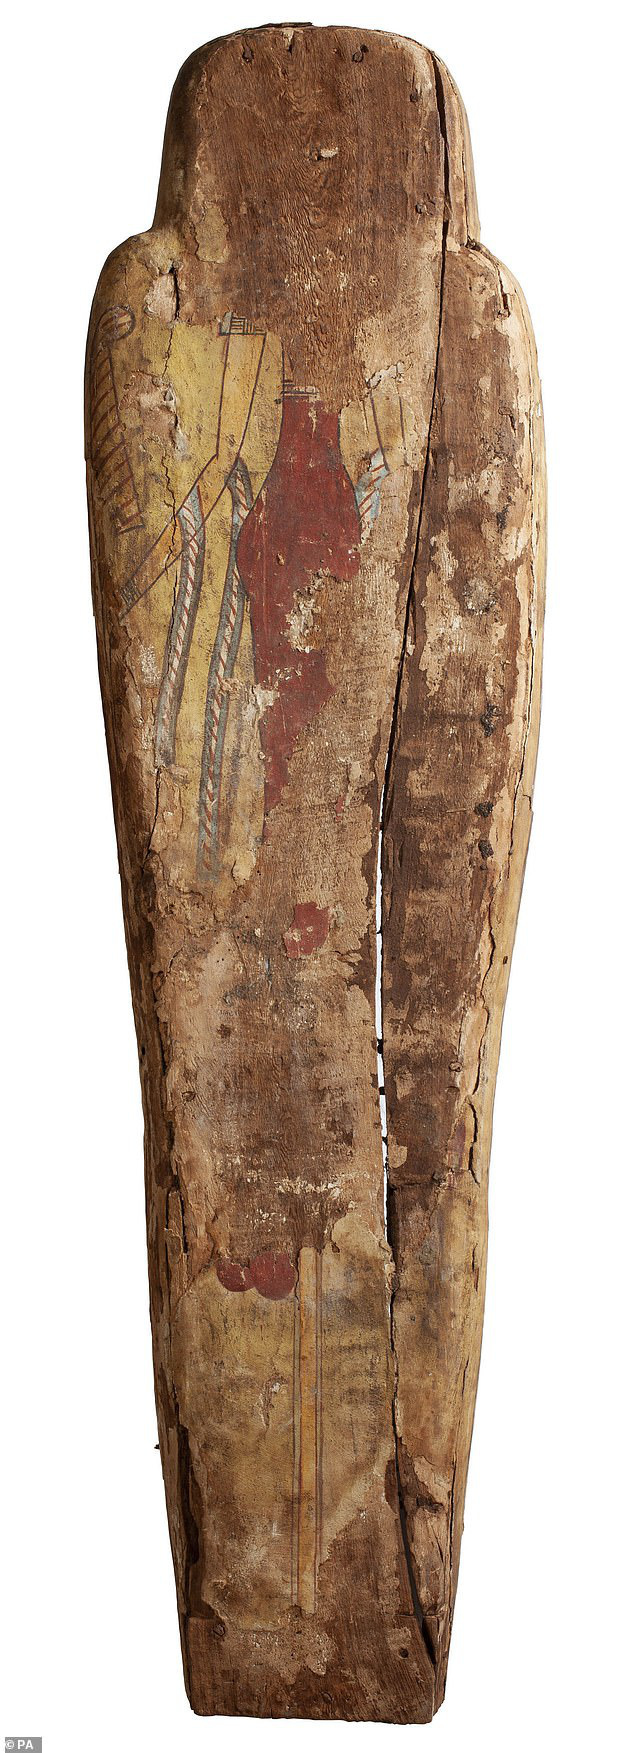 Đưa xác ướp 3.000 năm tuổi của công chúa Ai Cập ra khỏi quan tài, phát hiện bức chân dung bí ẩn cùng hàng loạt câu hỏi chưa có lời giải đáp - Ảnh 3.